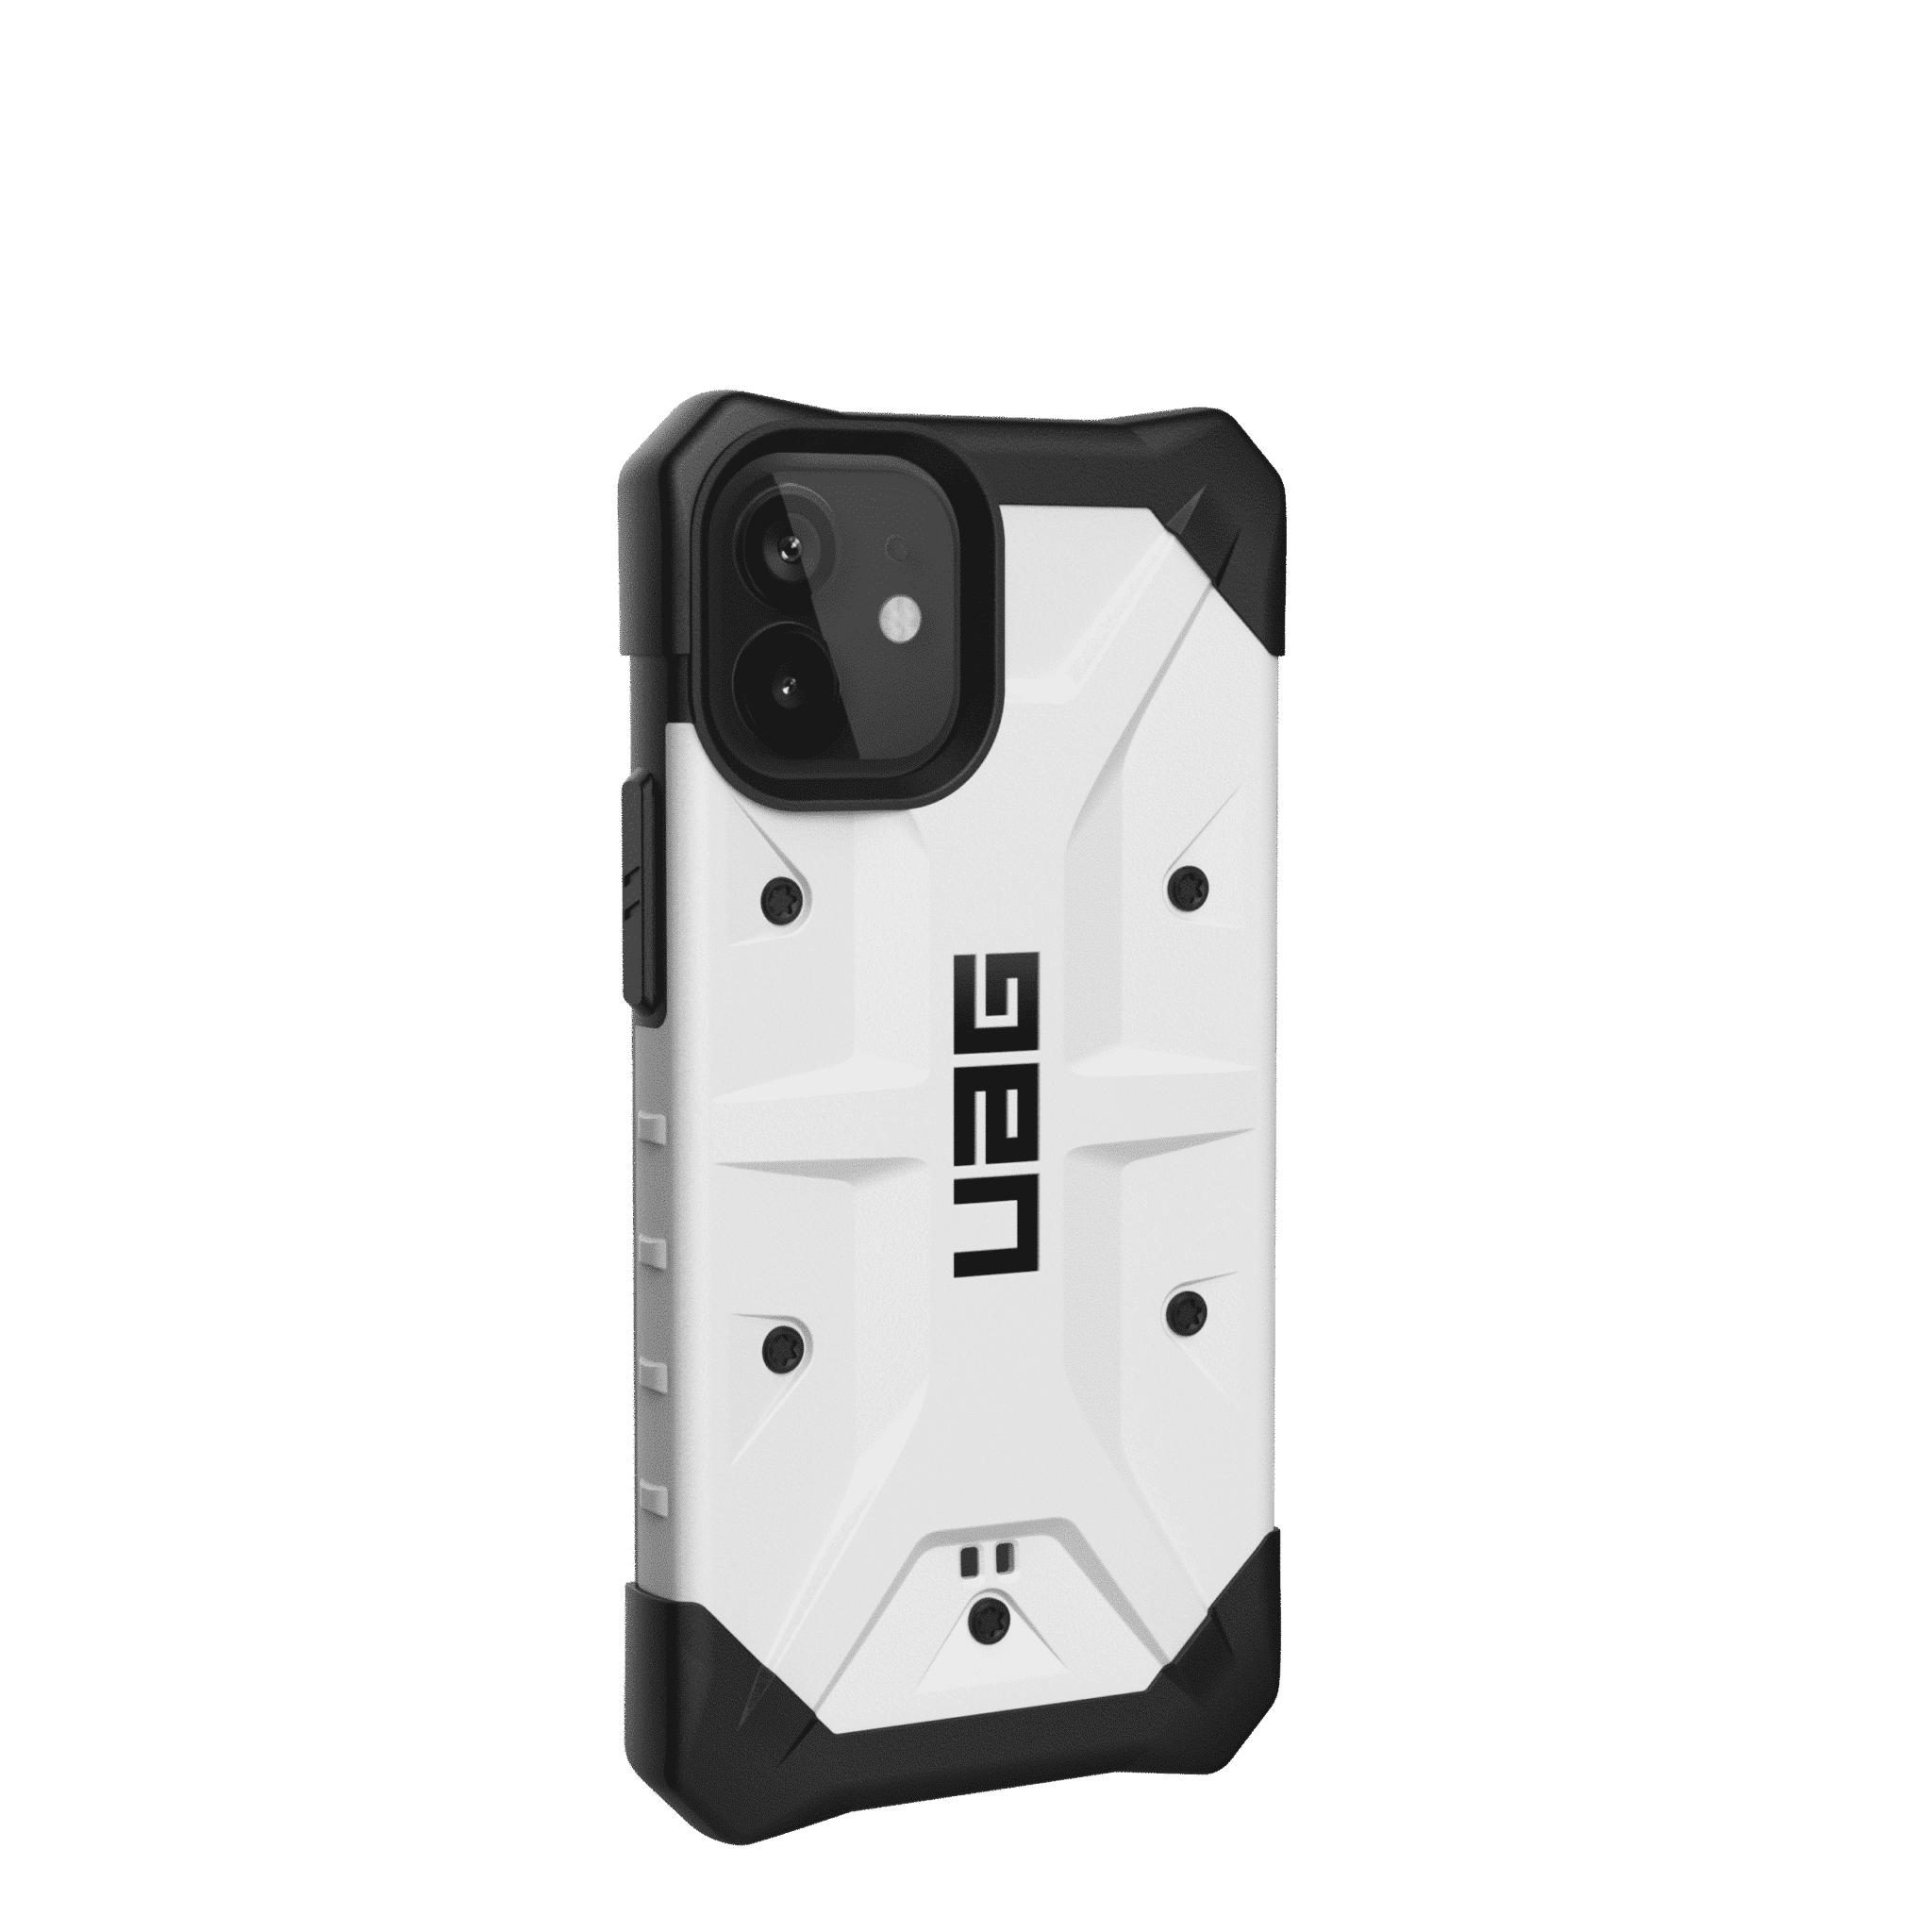 เคส UAG รุ่น Pathfinder - iPhone 12 Mini - ขาว